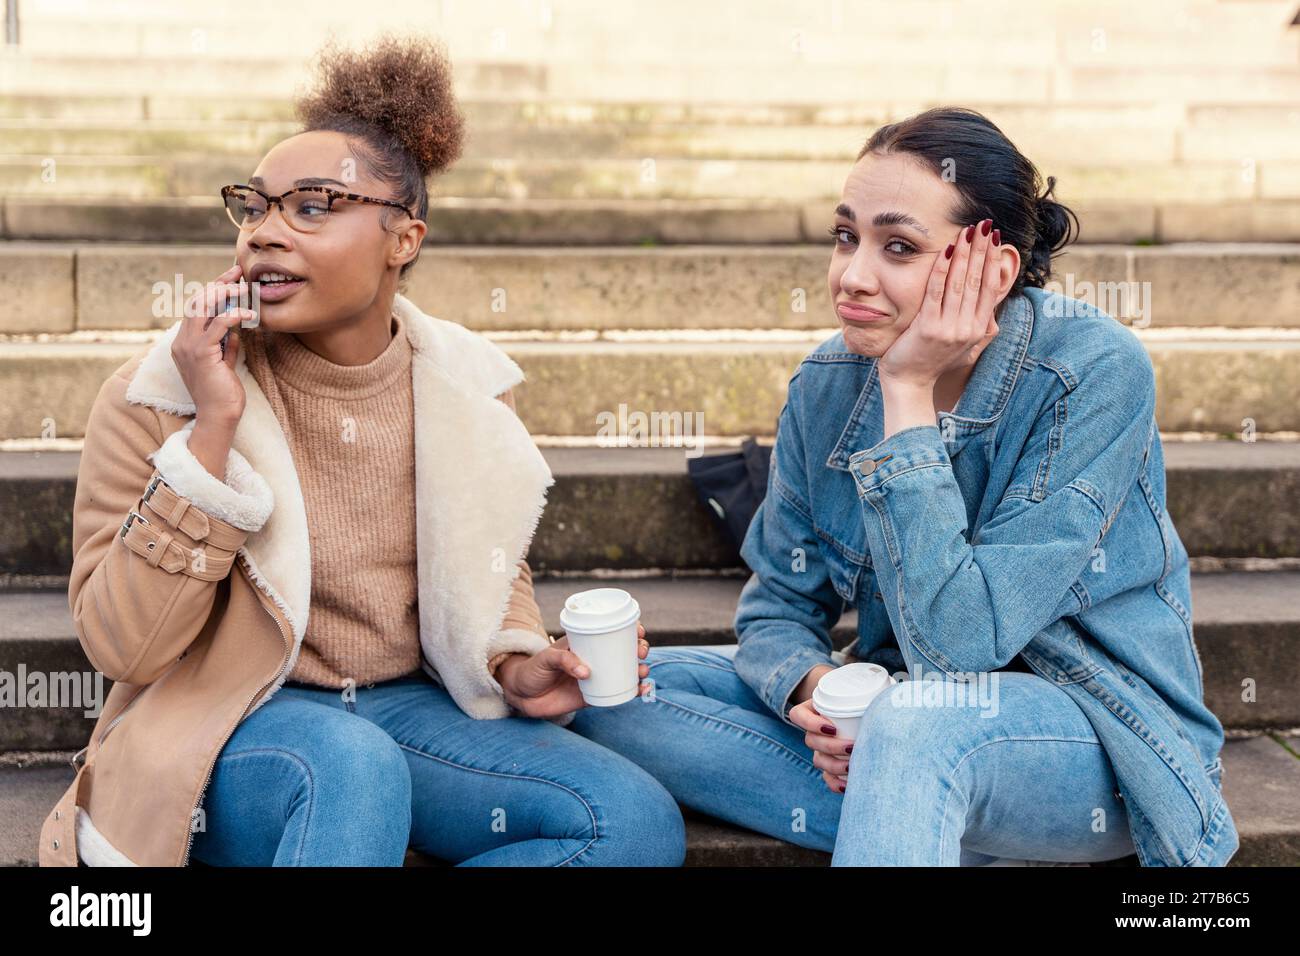 Zwei Studentinnen in einer Jeansjacke reden miteinander, am Telefon, lachen, trinken Kaffee auf der Treppe in der Stadt. Konzept der digitalen Teilung Stockfoto